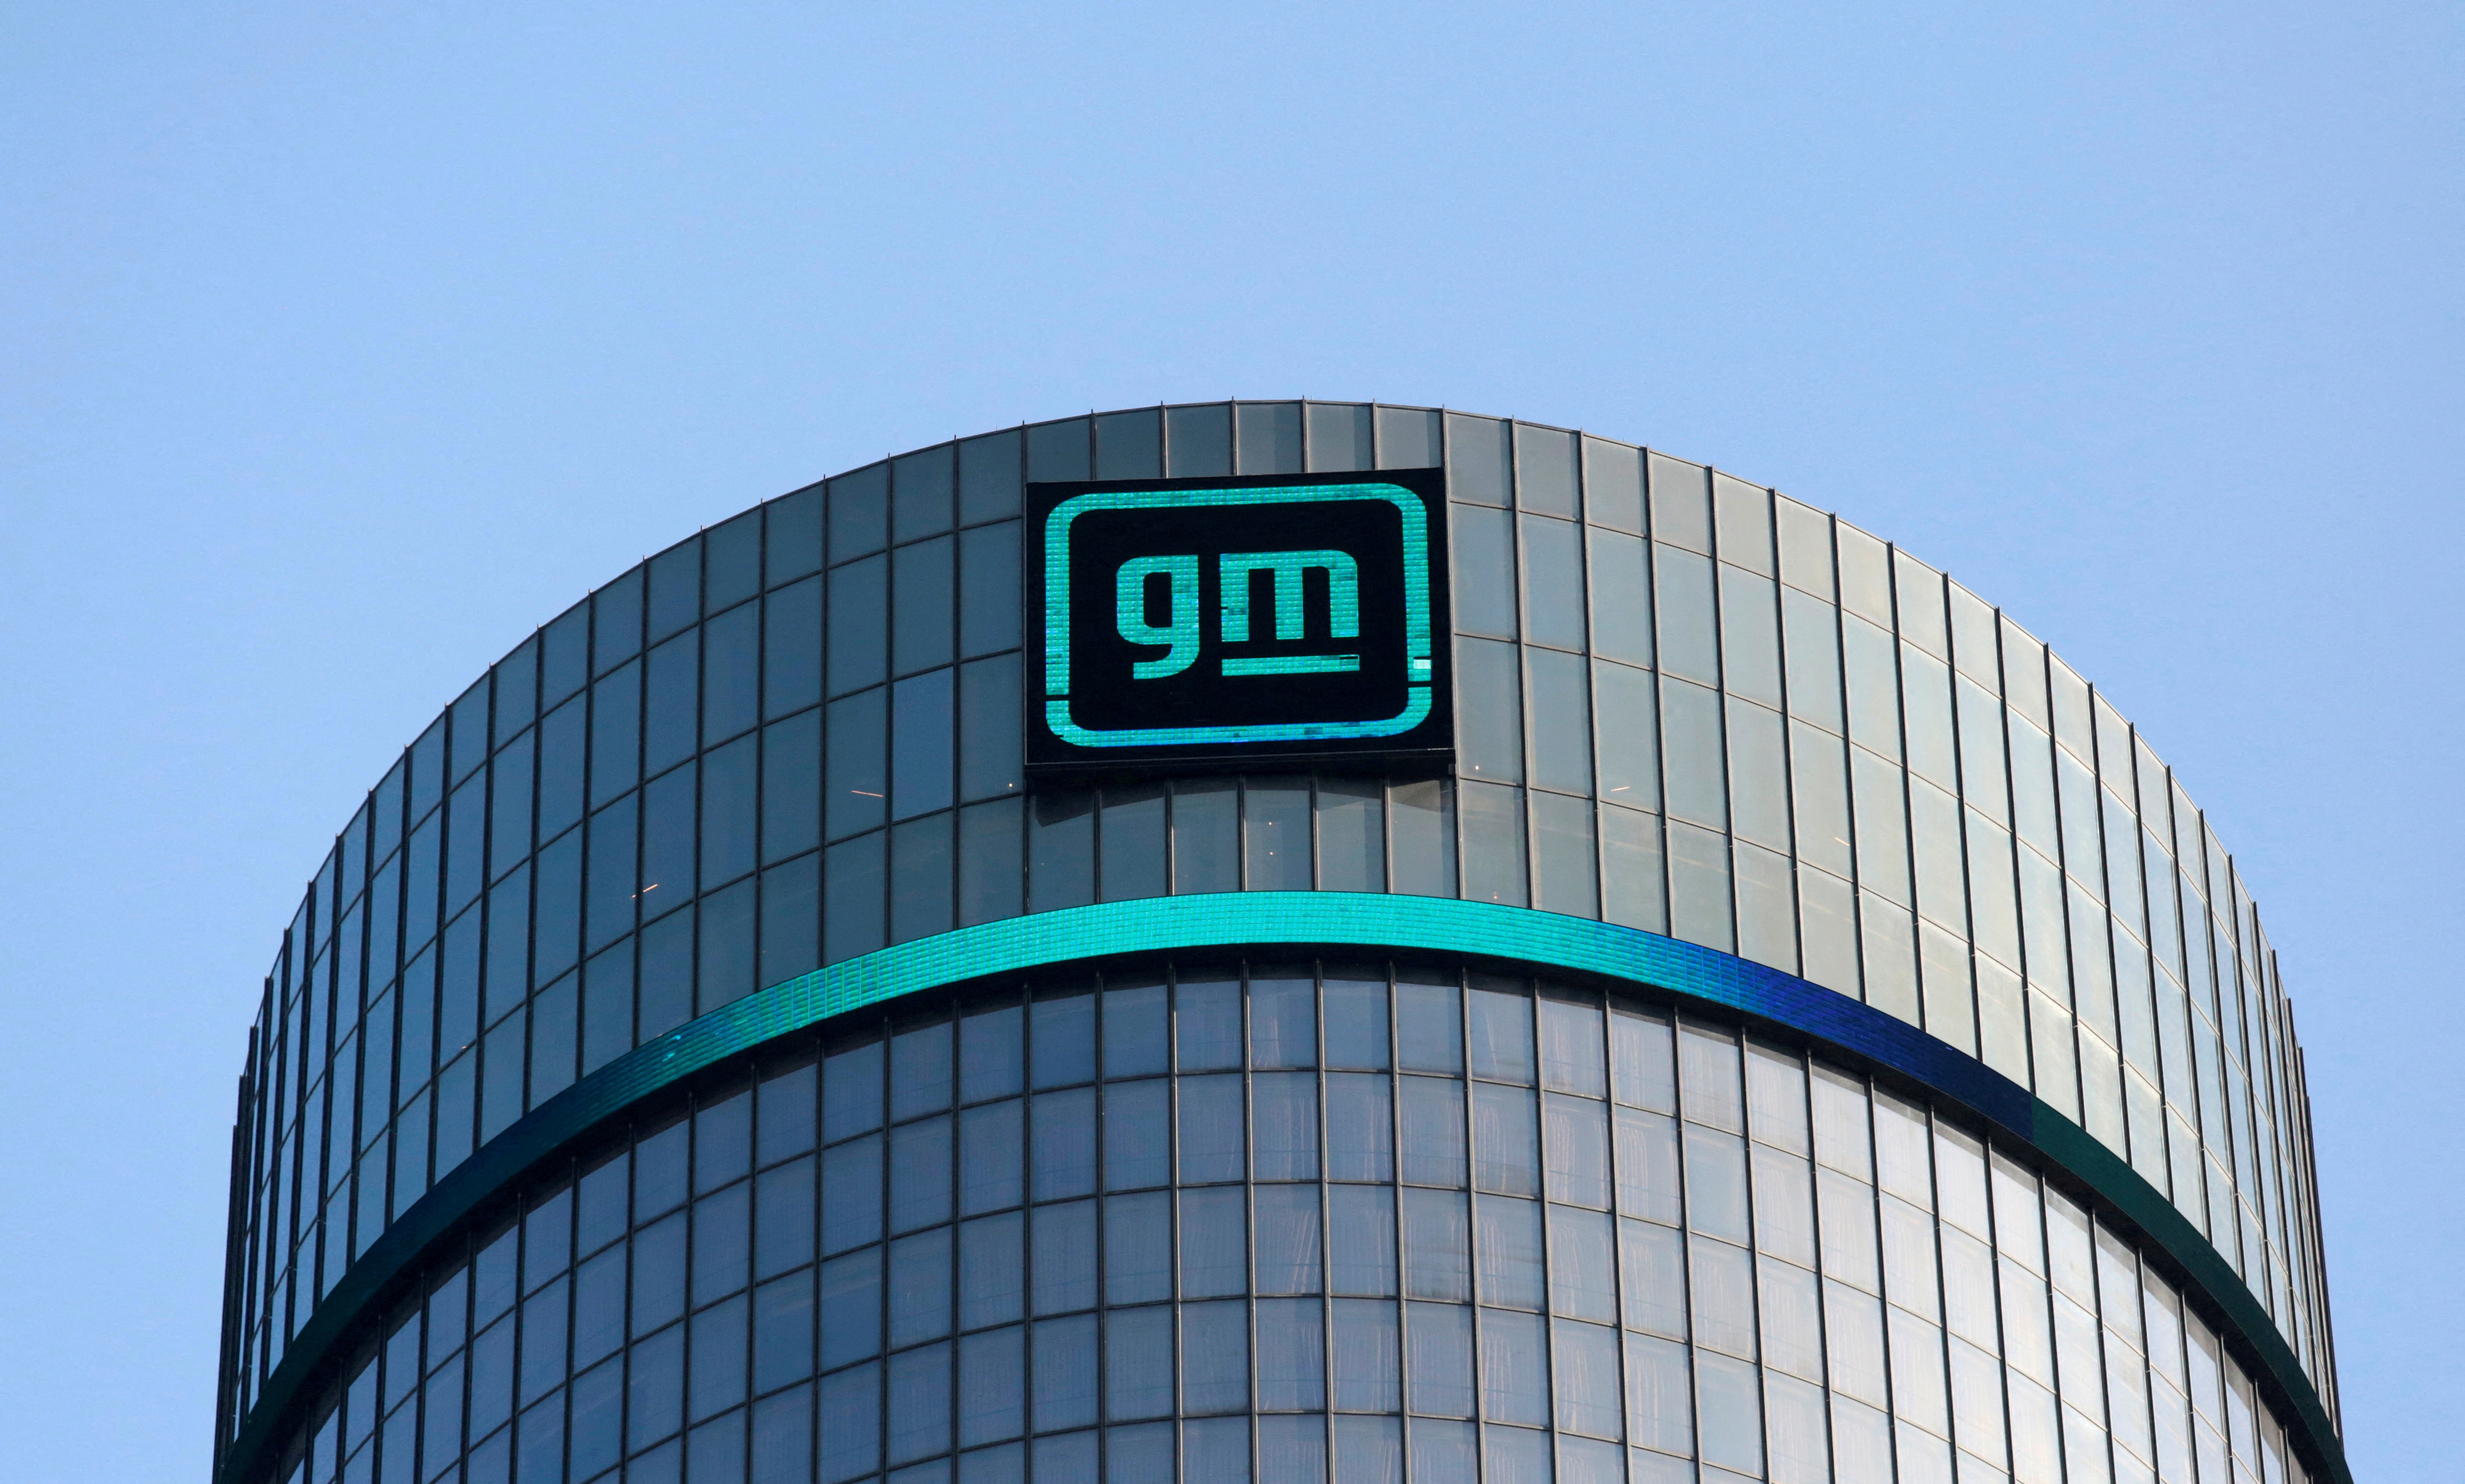 Logotipo de GM sobre la sede de la empresa